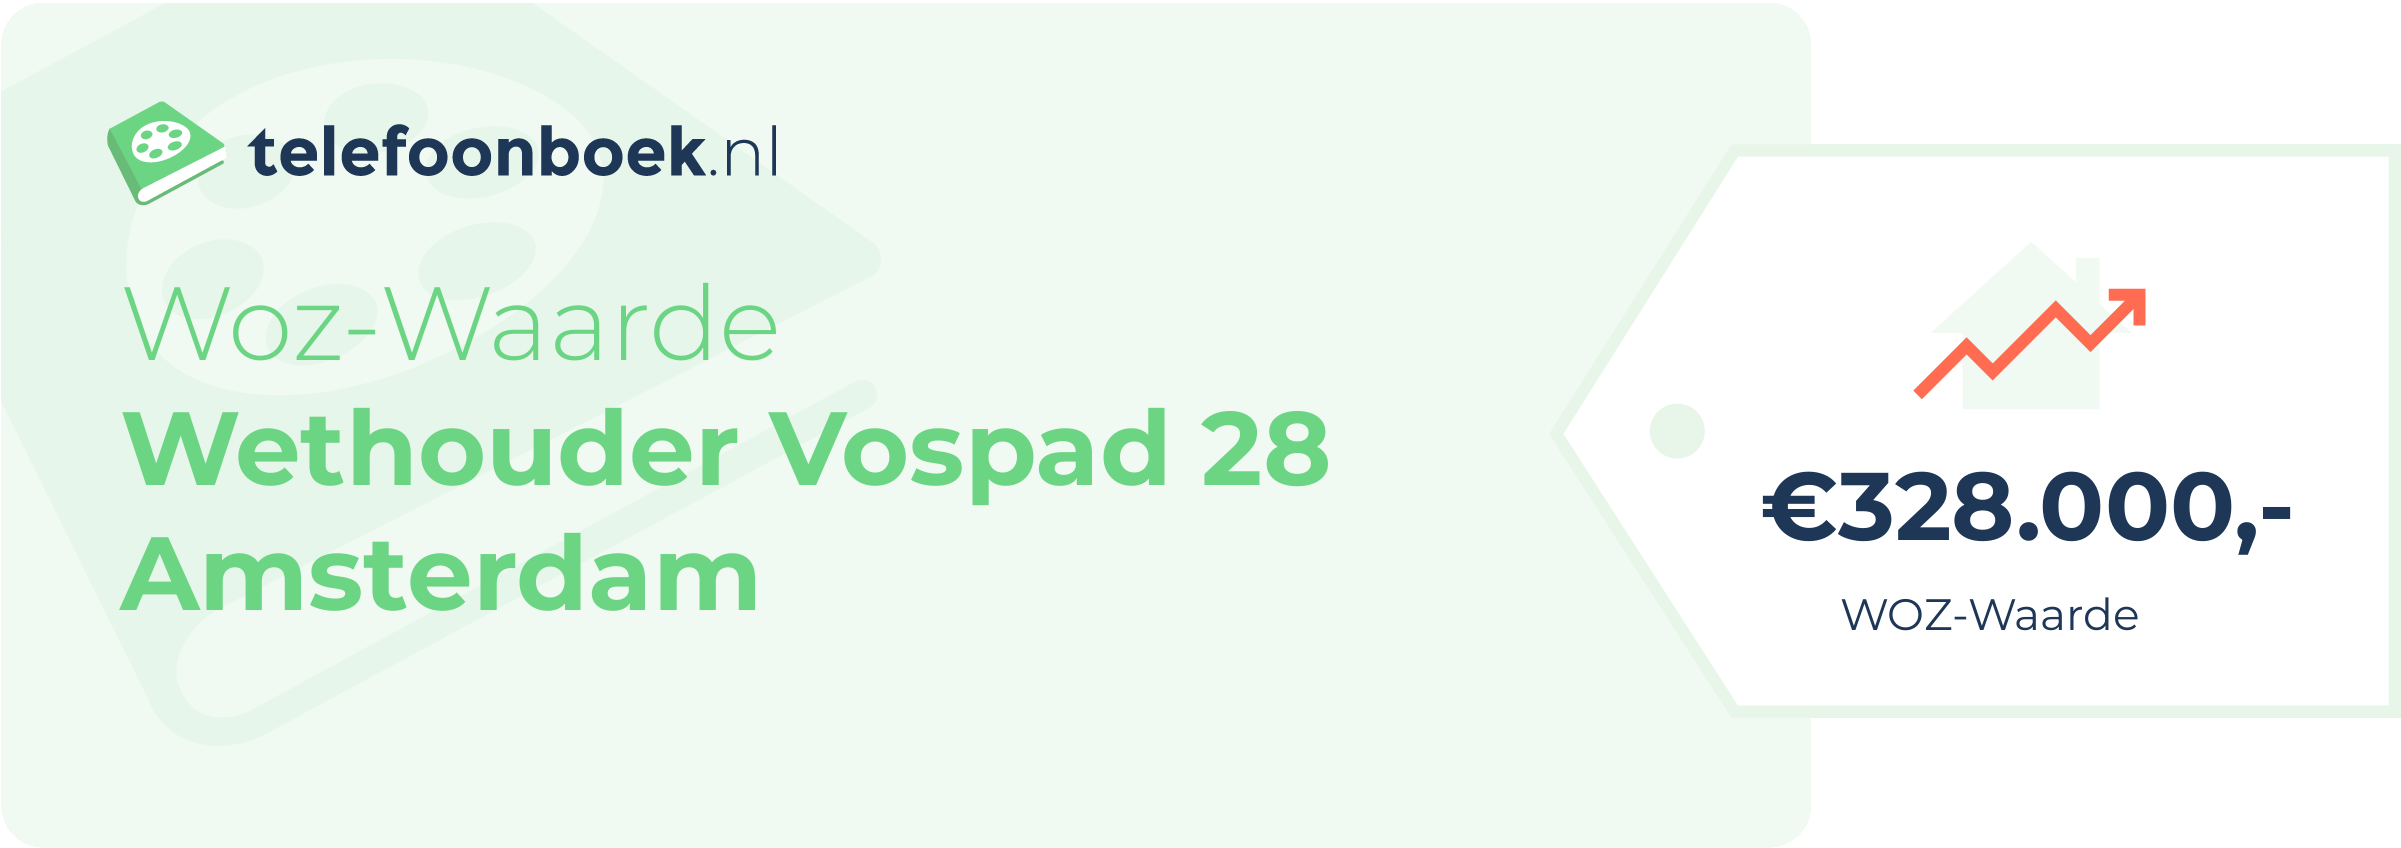 WOZ-waarde Wethouder Vospad 28 Amsterdam